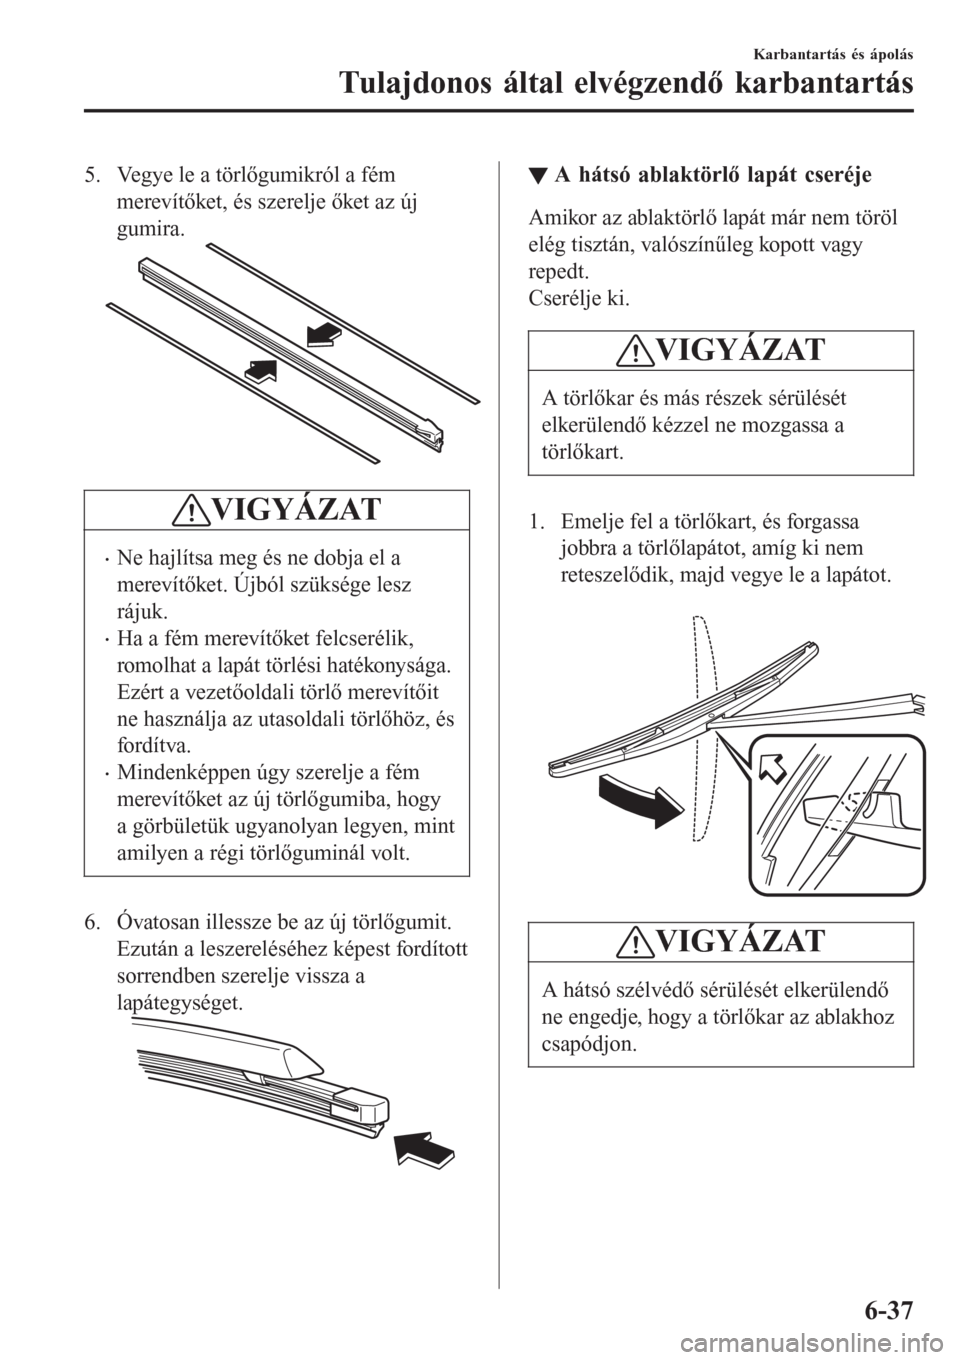 MAZDA MODEL CX-3 2016  Kezelési útmutató (in Hungarian) 5. Vegye le a törlőgumikról a fém
merevítőket, és szerelje őket az új
gumira.
VIGYÁZAT
•Ne hajlítsa meg és ne dobja el a
merevítőket. Újból szüksége lesz
rájuk.
•Ha a fém merev